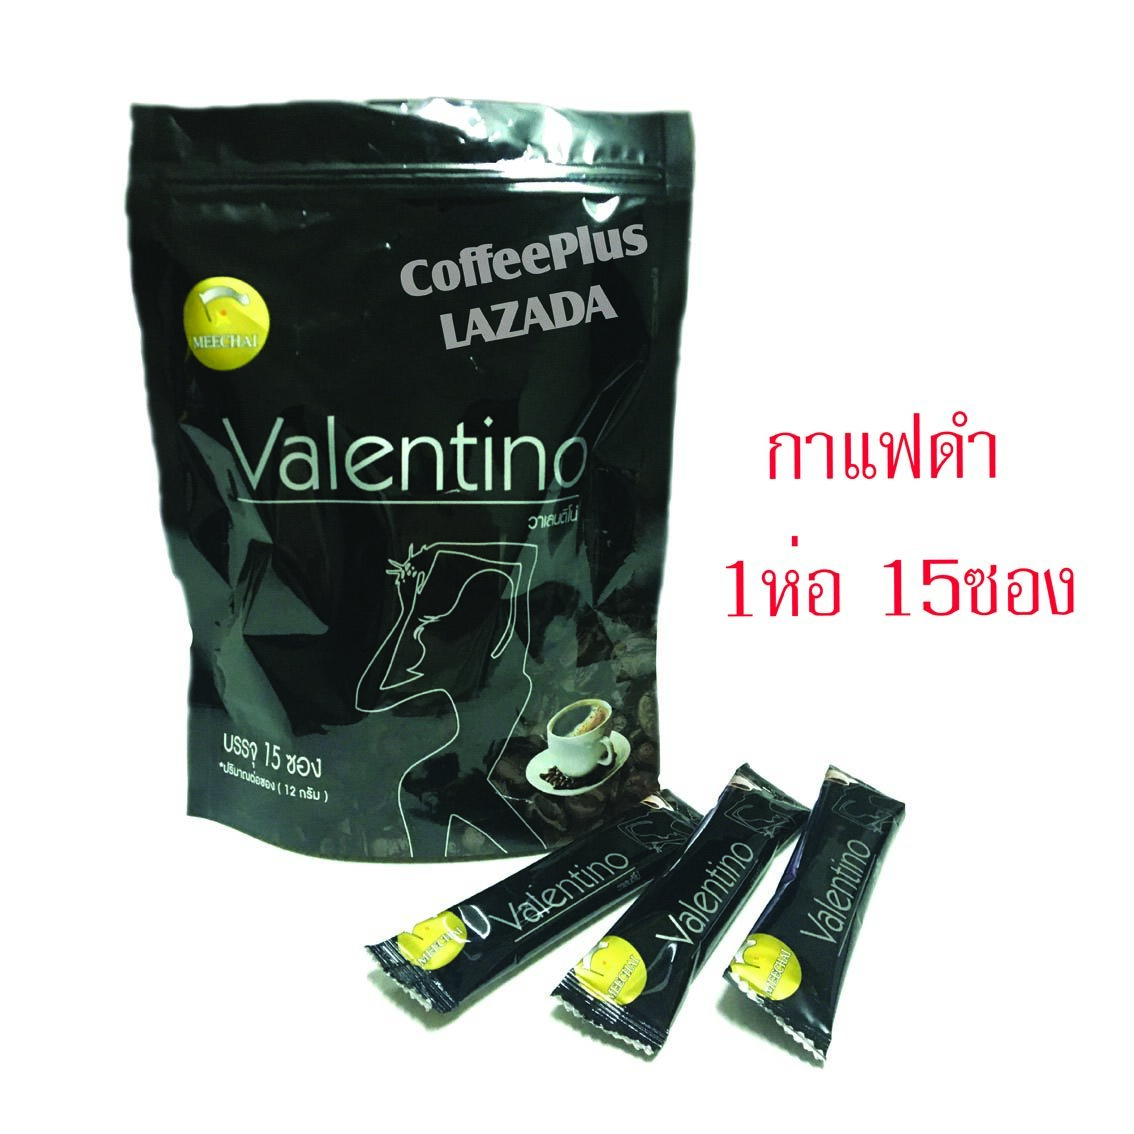 กาแฟลดน้ำหนัก กาแฟลดความอ้วน  Valentino Coffee กาแฟวาเลนติโน่ กาแฟดำ (1ห่อ 15 ซอง)